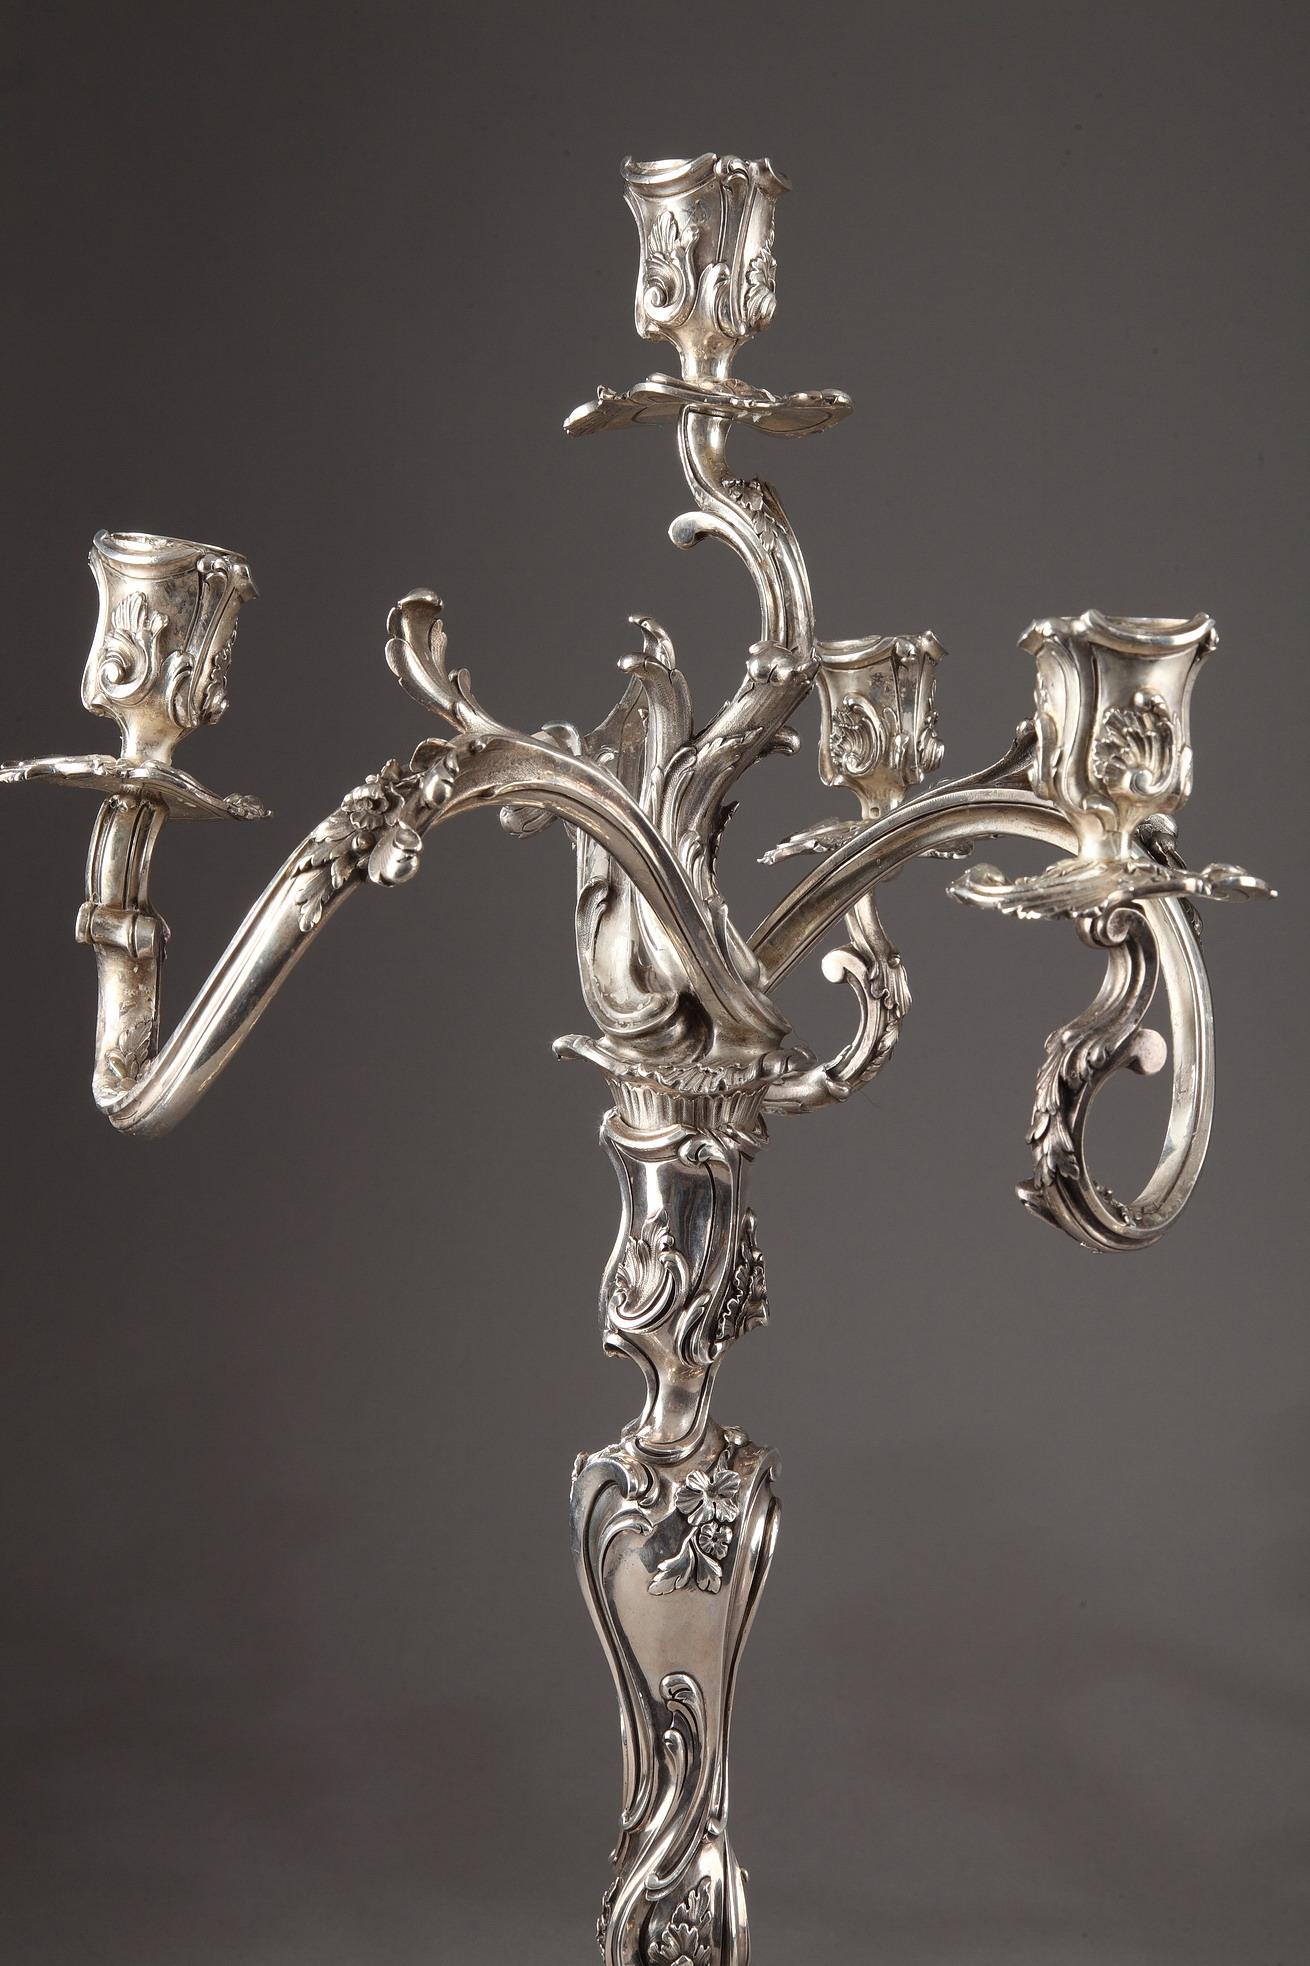 Paar Kandelaber im Stil Louis XV aus Silber mit Rocailles-Dekor und asymmetrischen Verzierungen. Die vier Lichtarme, die in bobèches binettes enden, sind fein ziseliert mit stilisierten Spülungen, Blättern und Blumen.

Diese Kandelaber sind eine